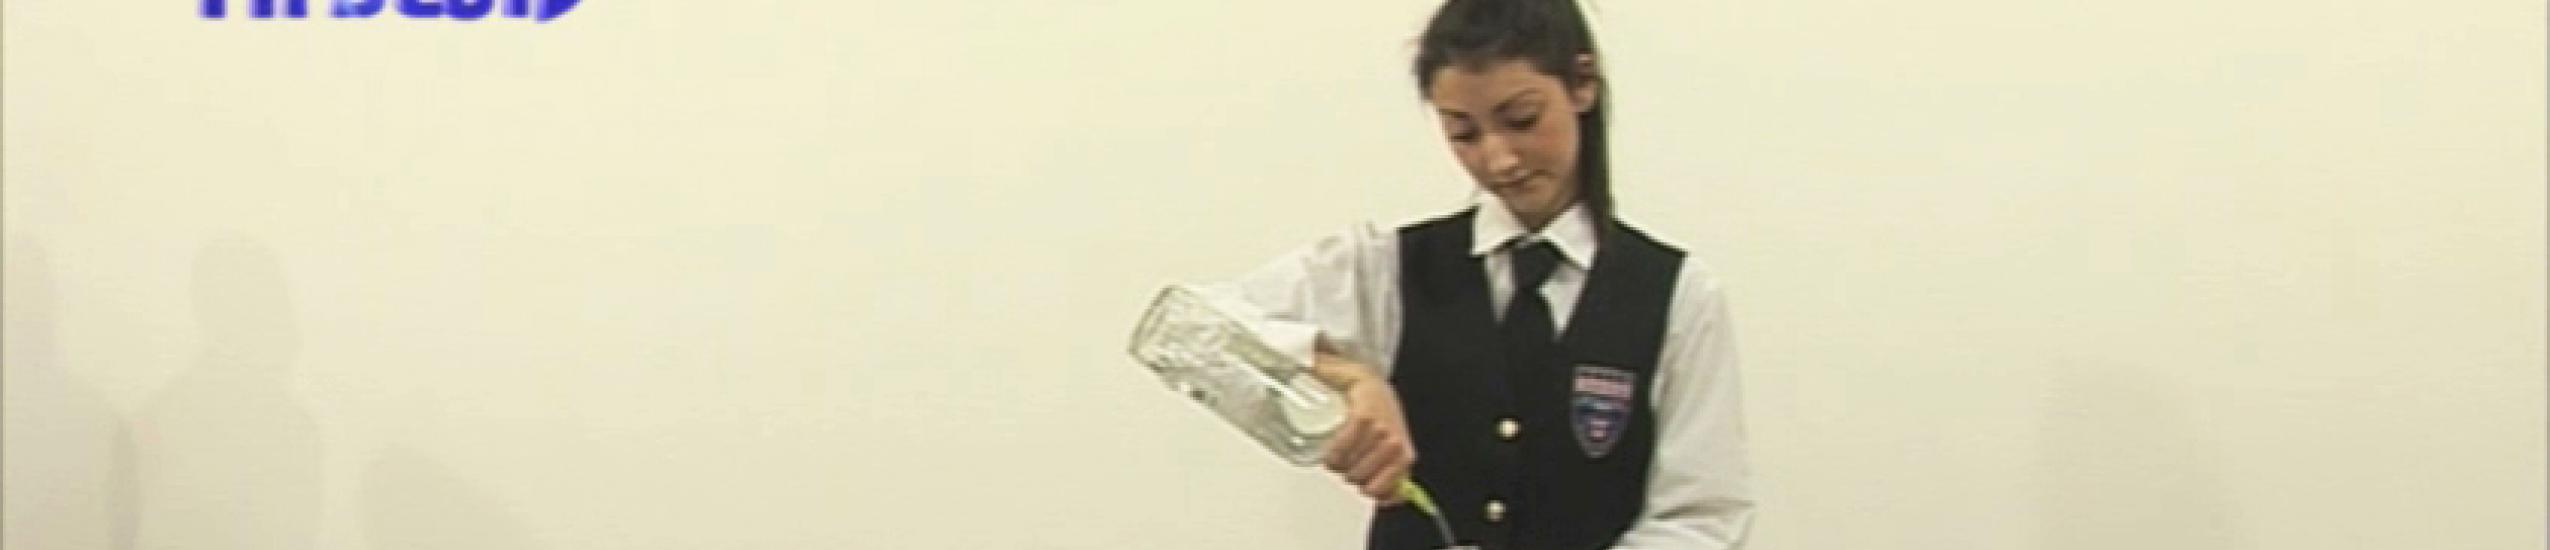 Drinkare e non trinkare: il bergese fa scuola sul bere consapevole (video di tabloid)